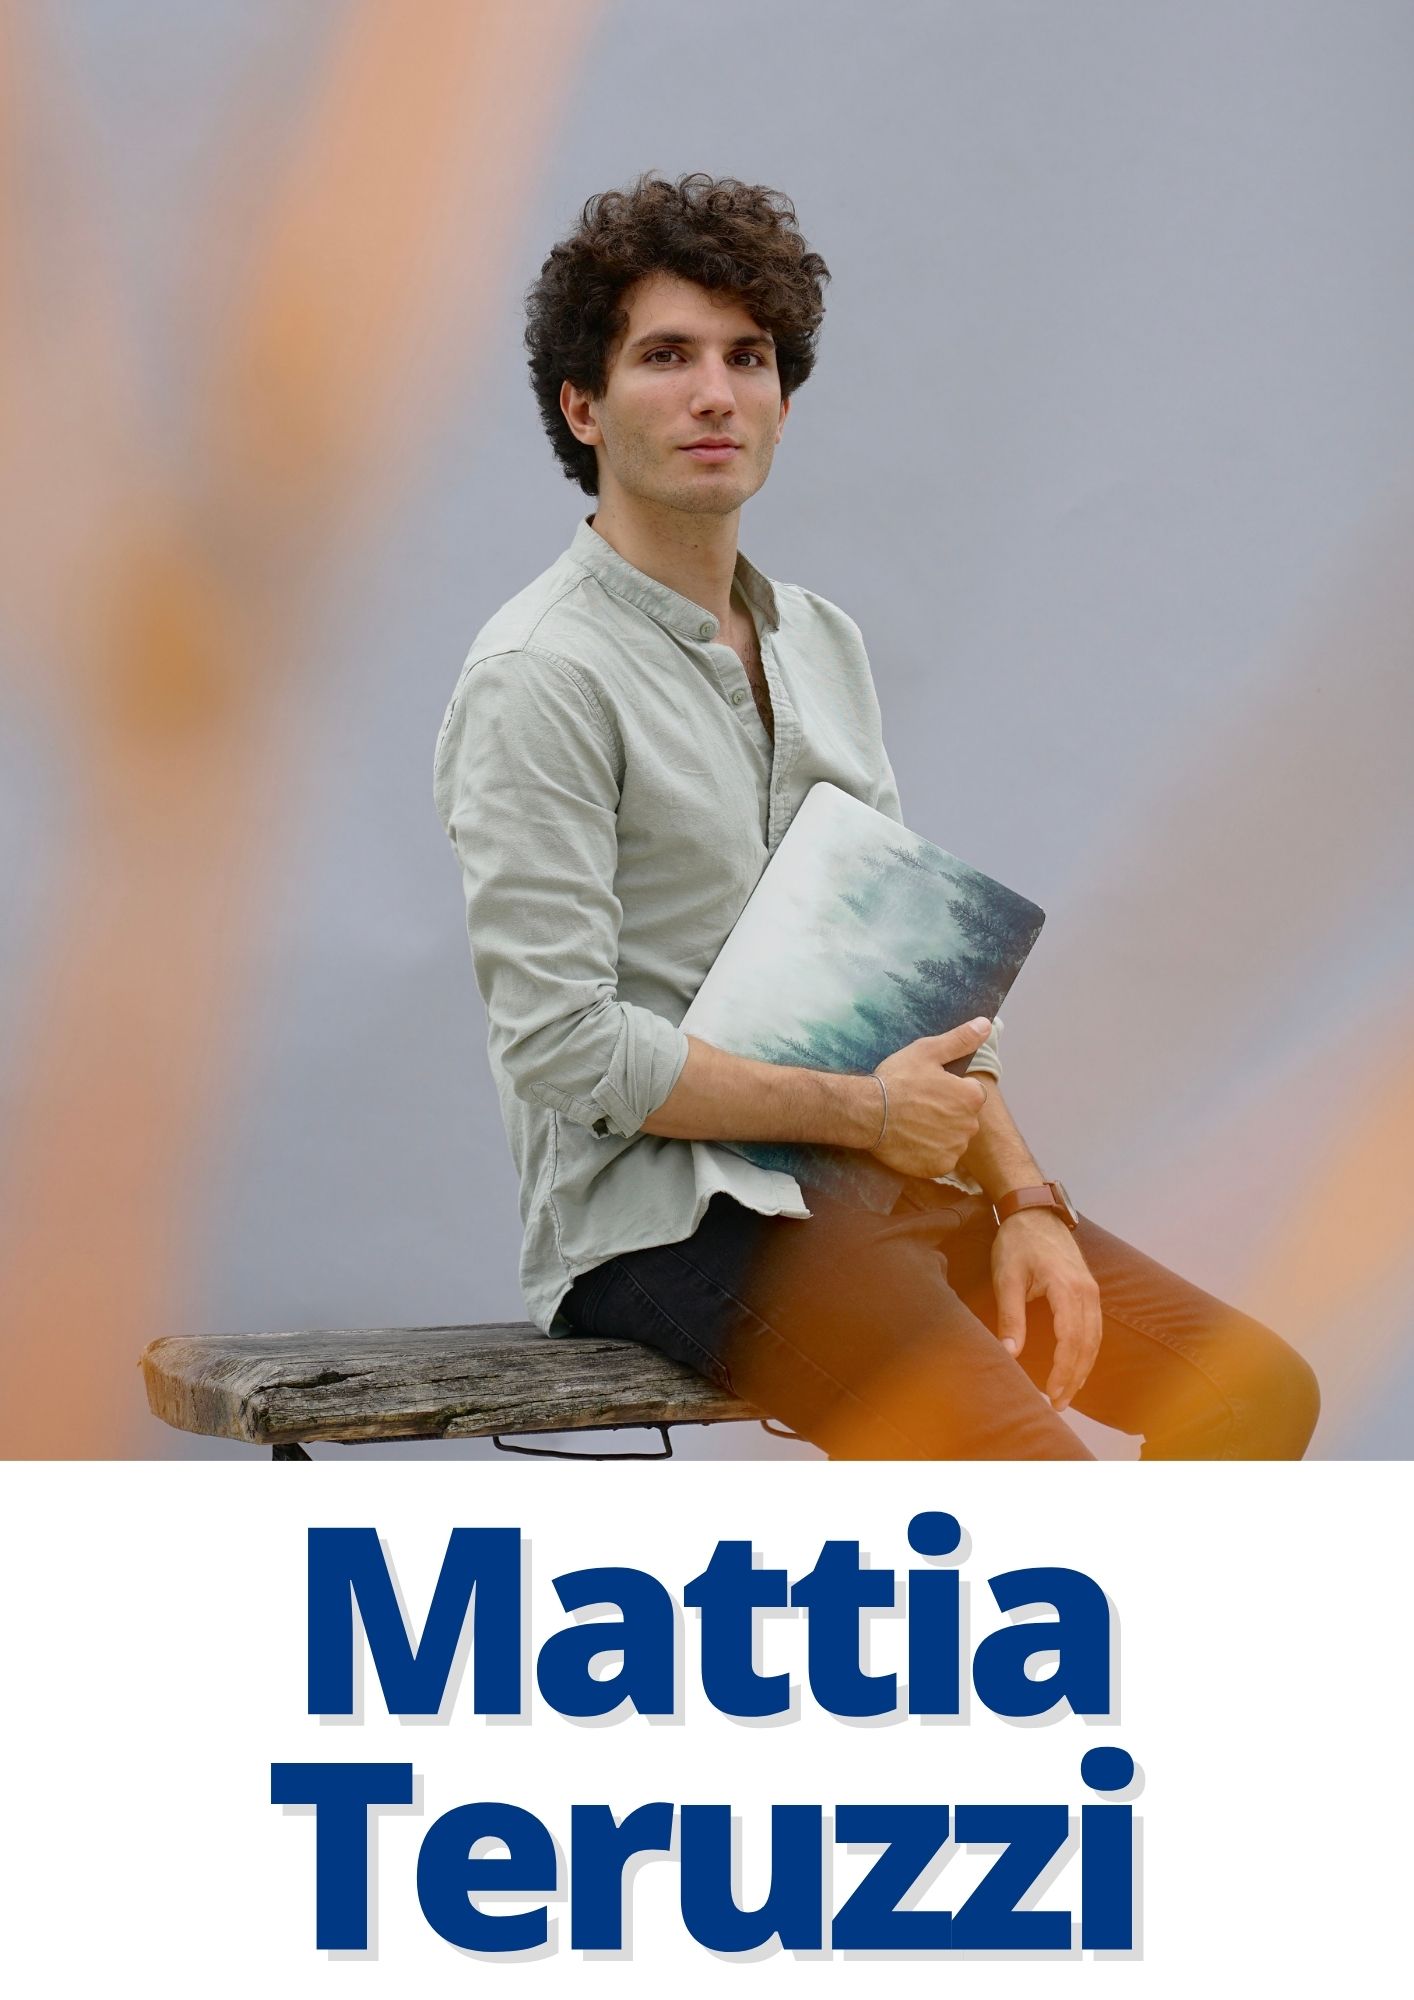 Mattia Teruzzi